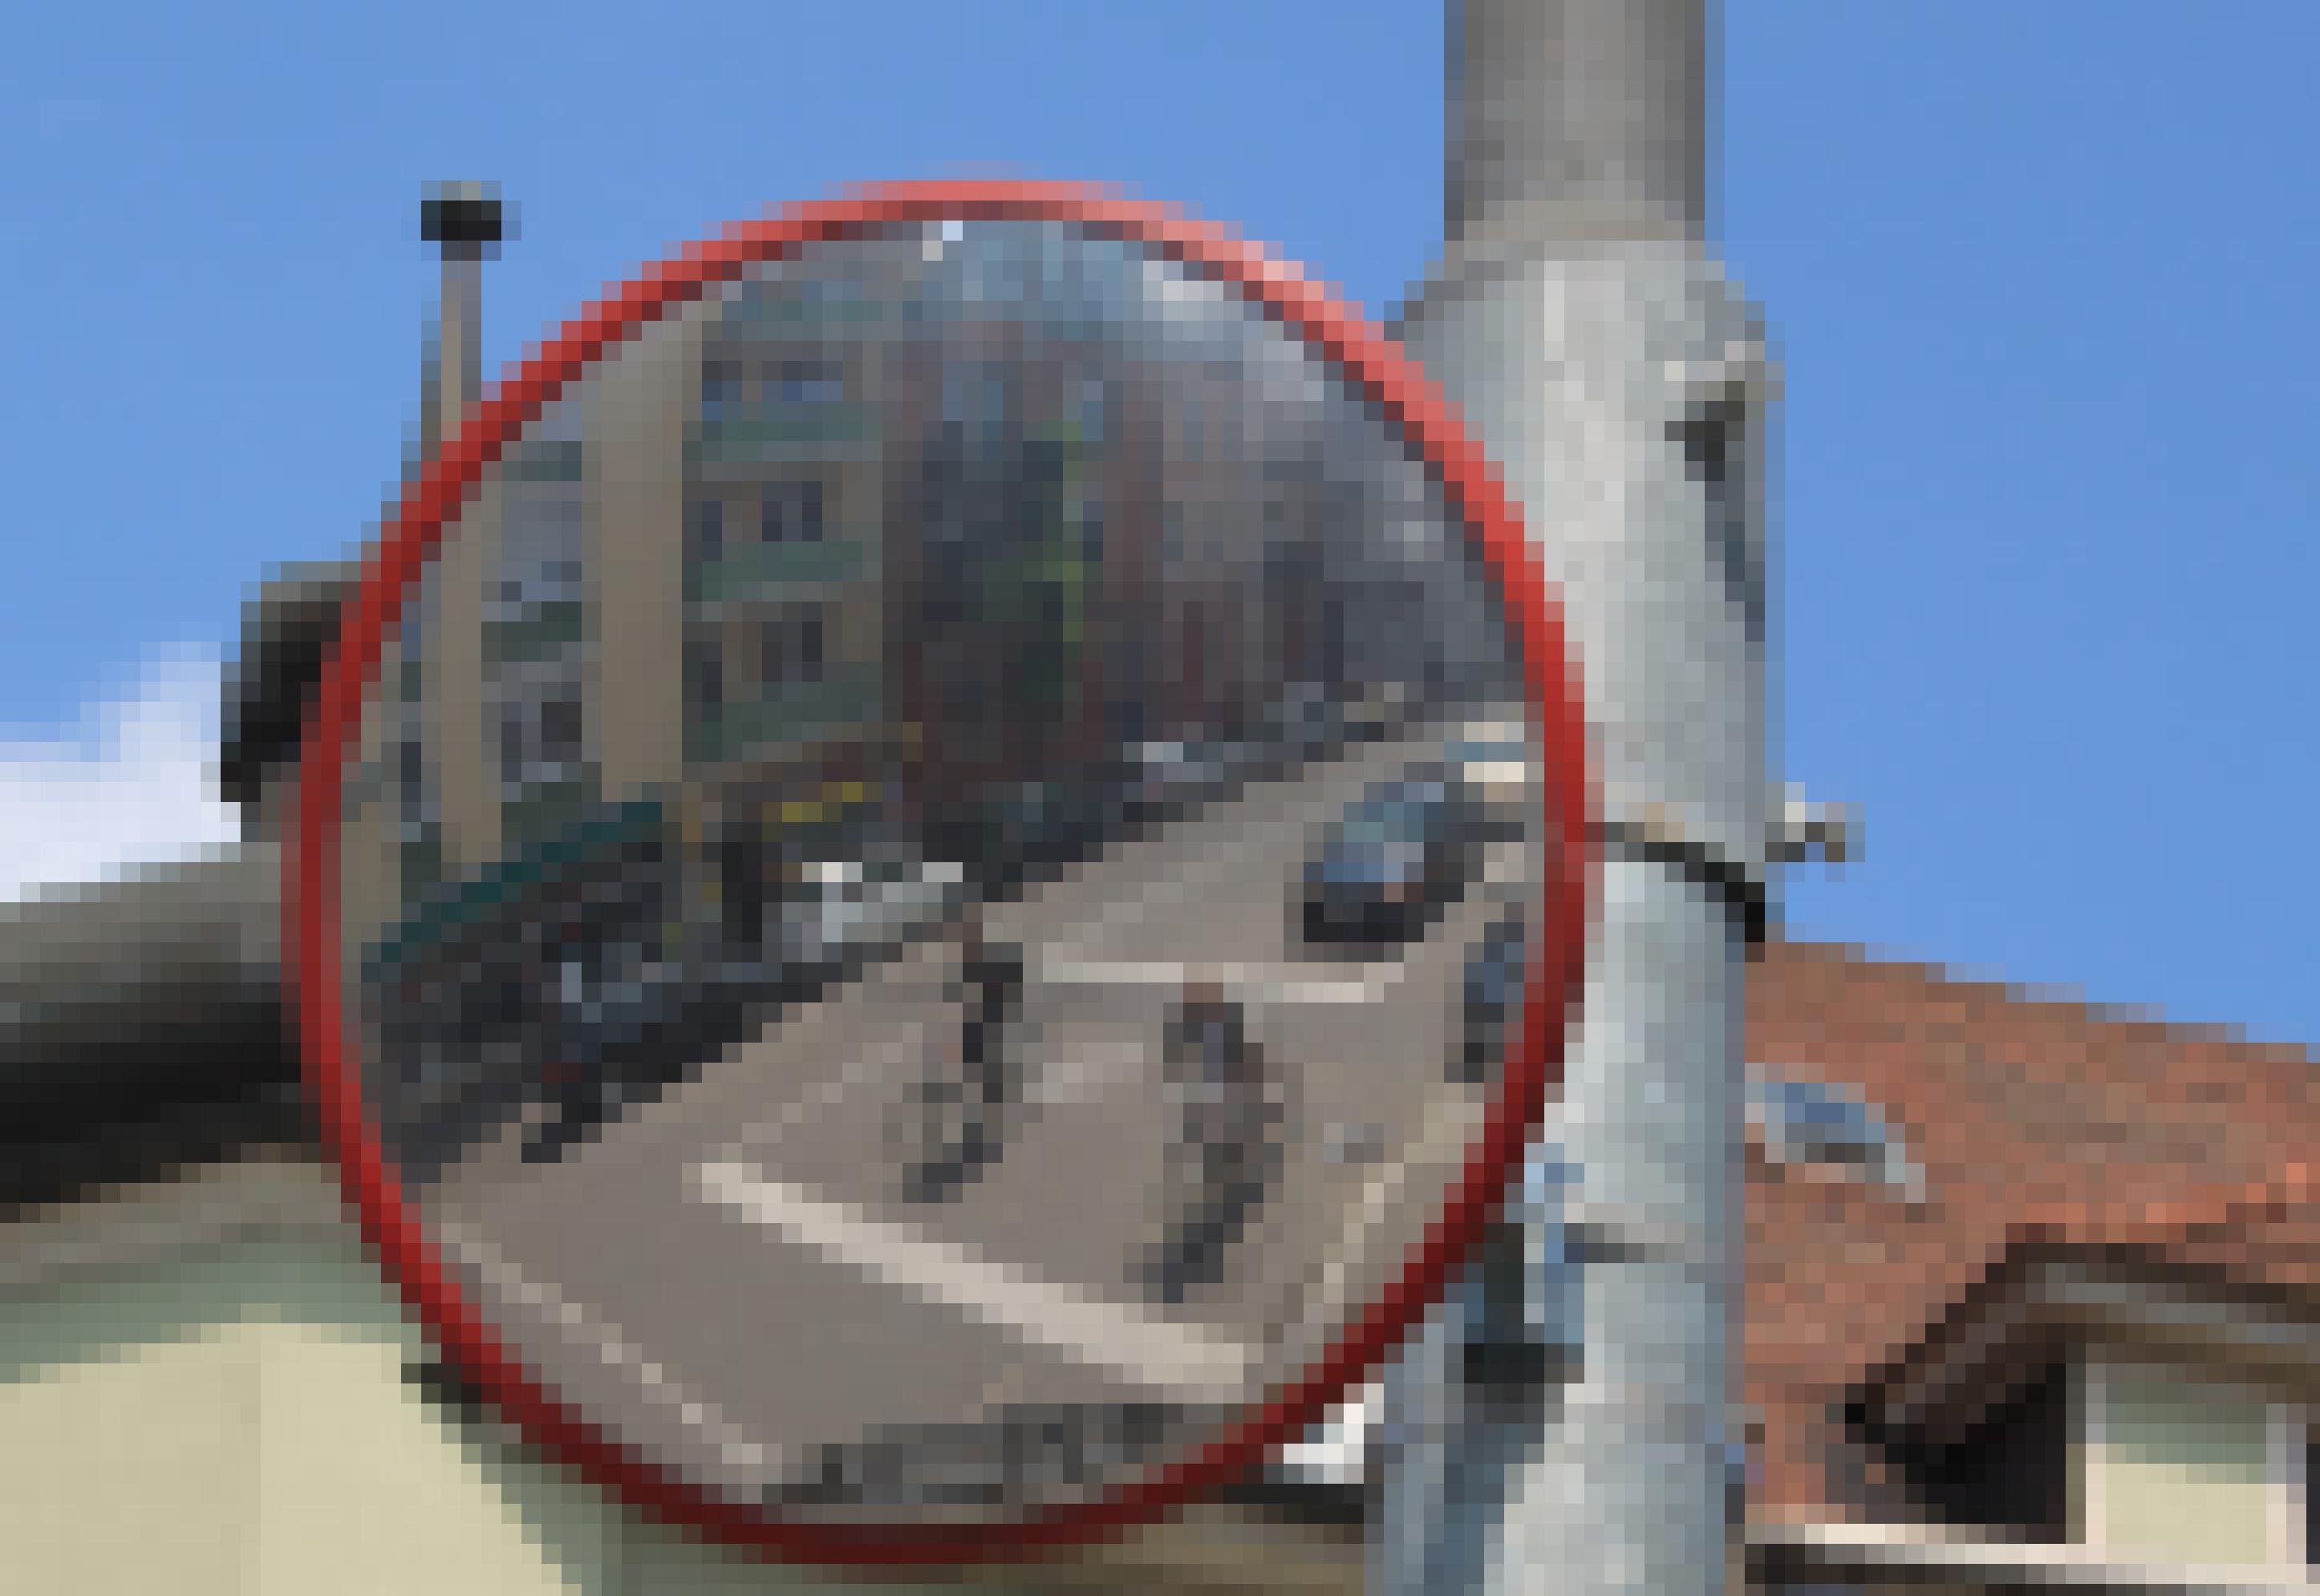 Blick in einen Verkehrsspiegel zeigt Radfahrer an Kreuzung.